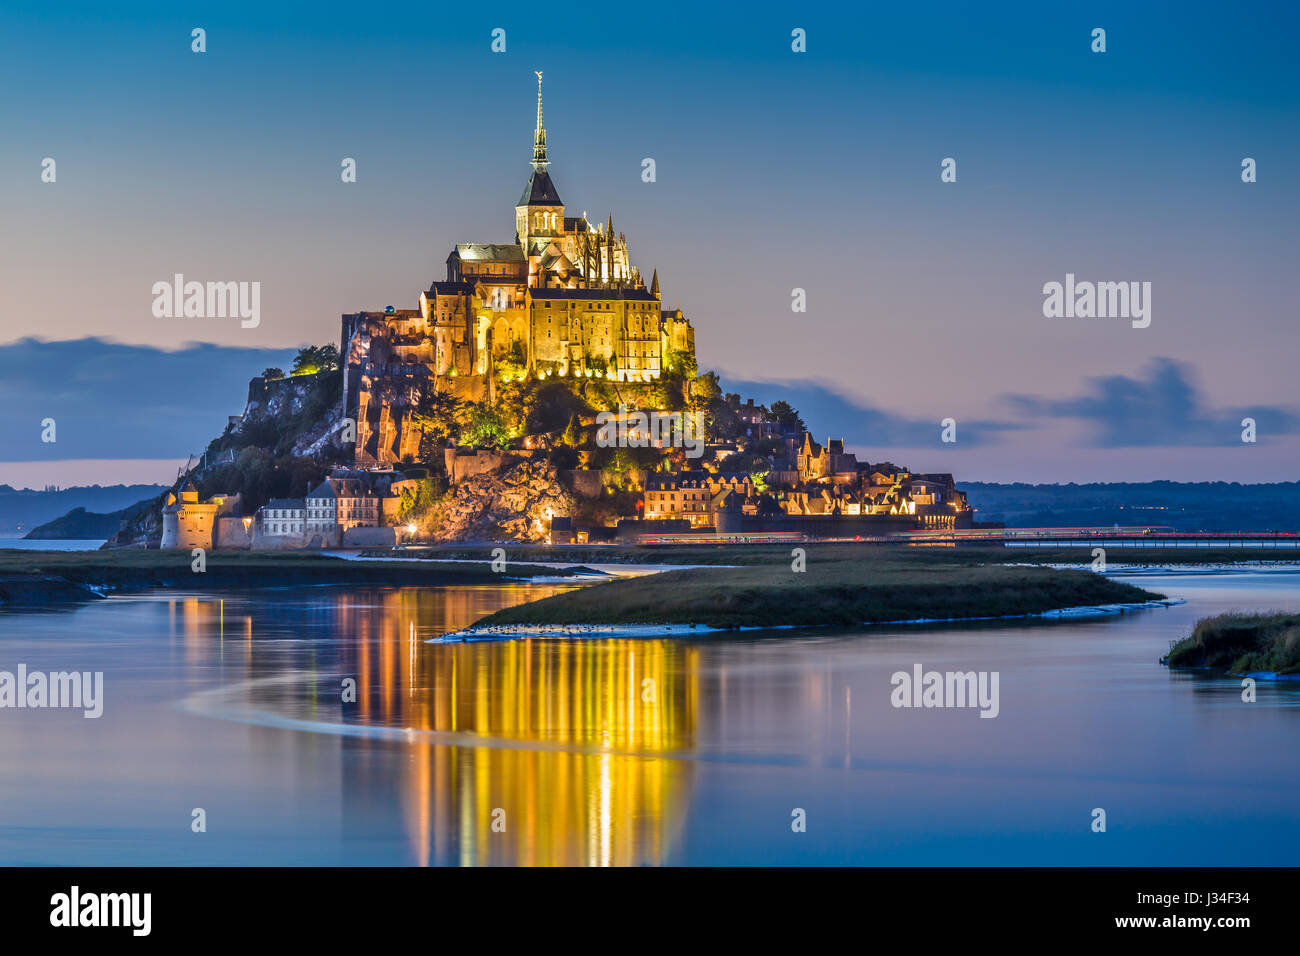 Belle vue sur le Mont Saint-Michel célèbre île de marée dans le magnifique crépuscule pendant l'heure bleue, au crépuscule, en Normandie, dans le nord de la France Banque D'Images